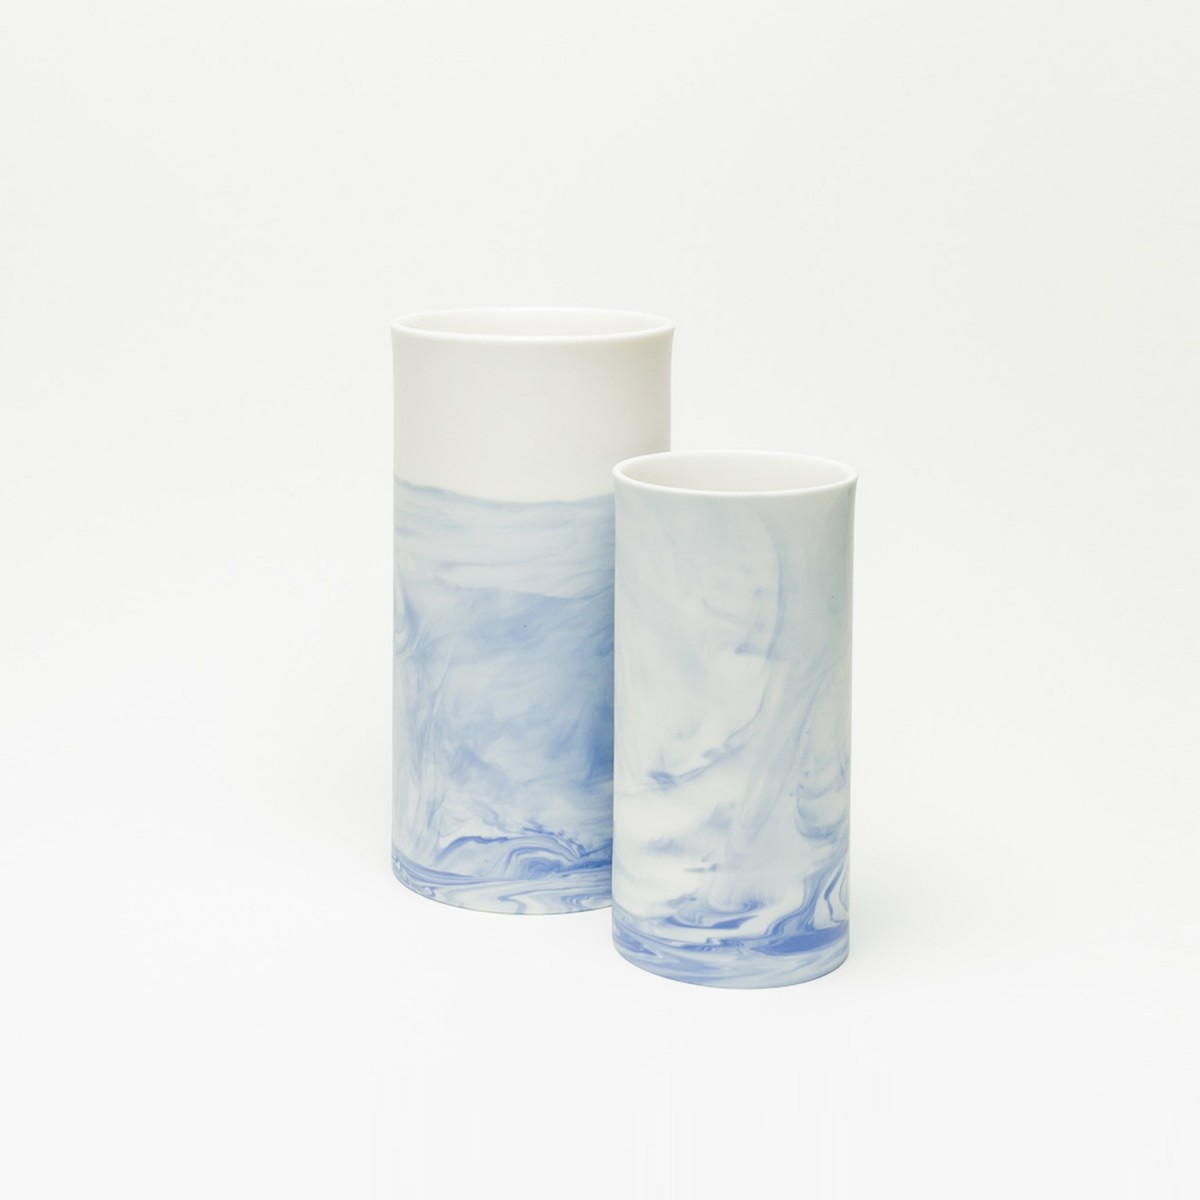 Rimma Tchilingarian – The Blue Vase – Handgemachtes Porzellan, weiß und blau – marmoriert